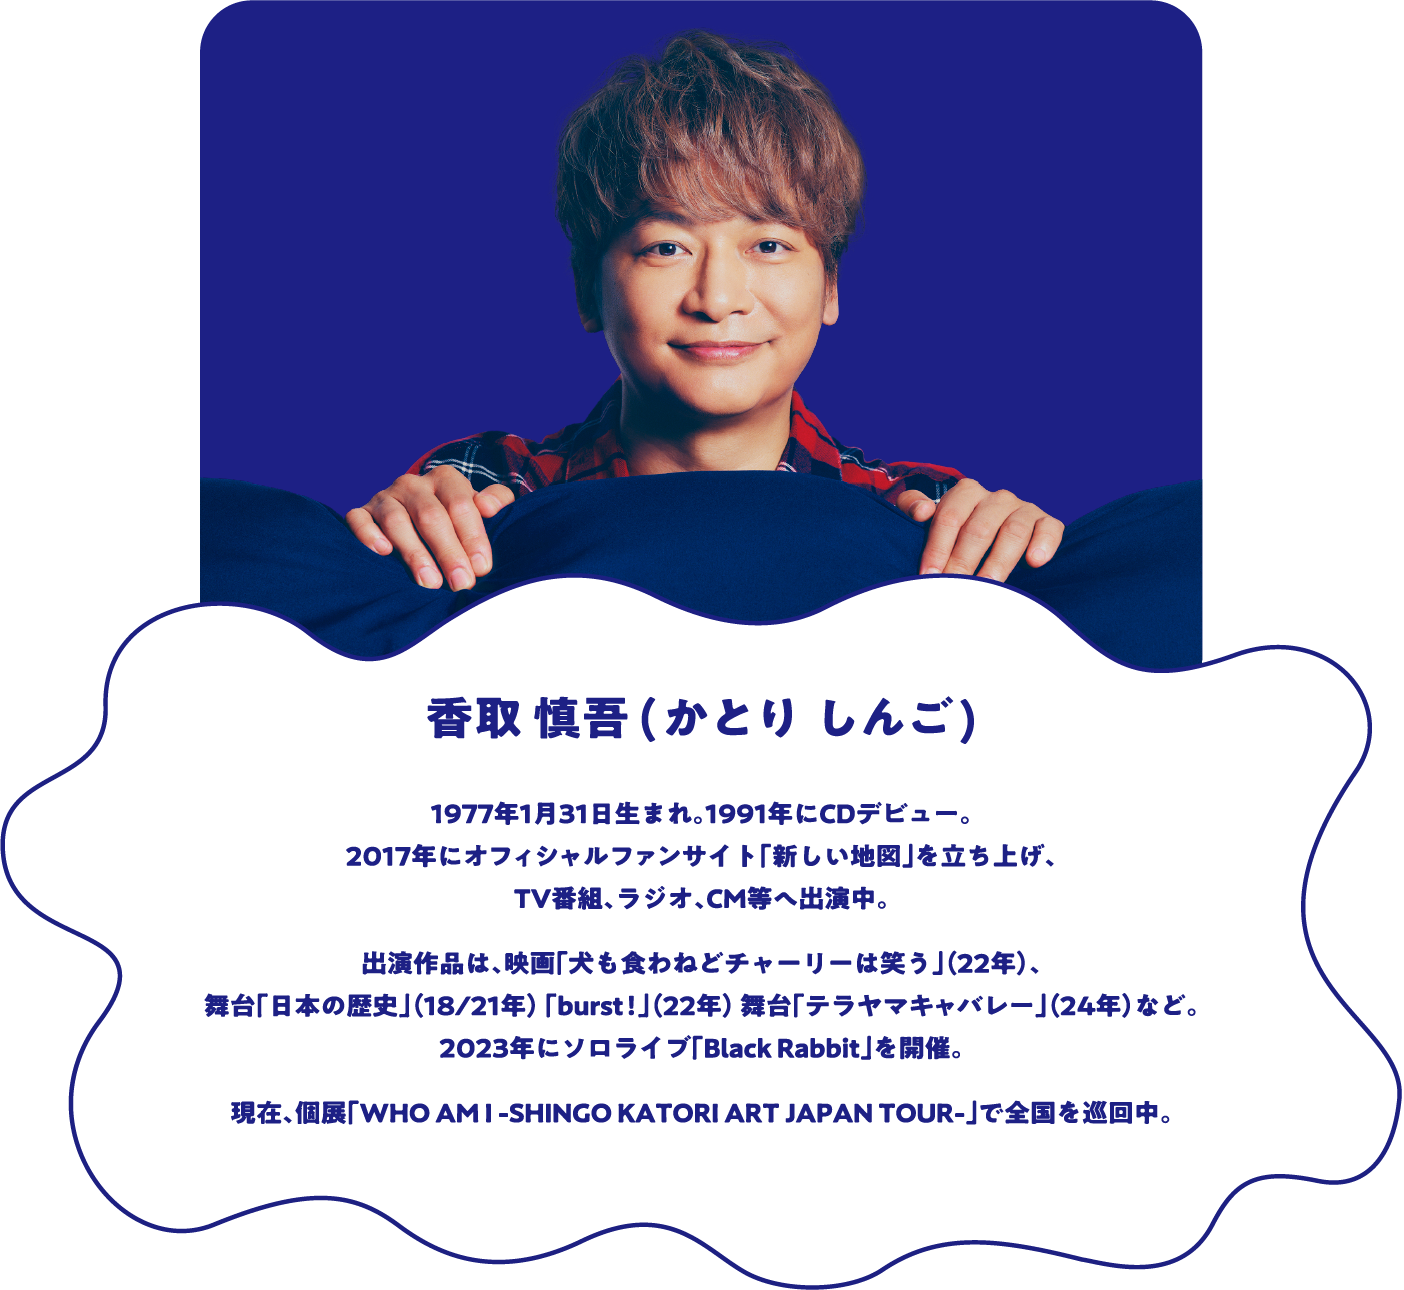 香取慎吾（かとり しんご） 1977年1月31日生まれ。1991年にCDデビュー。2017年にオフィシャルファンサイト「新しい地図」を立ち上げ、TV番組、ラジオ、CM等へ出演中。出演作品は、映画「犬も食わねどチャーリーは笑う」(22年)、舞台「日本の歴史」(18/21年)「burst!」(22年)舞台「テラヤマキャバレー」(24年)など。2023年にソロライブ「Black Rabbit」を開催。現在、個展「WHO AM I -SHINGO KATORI ART JAPAN TOUR-」で全国を巡回中。